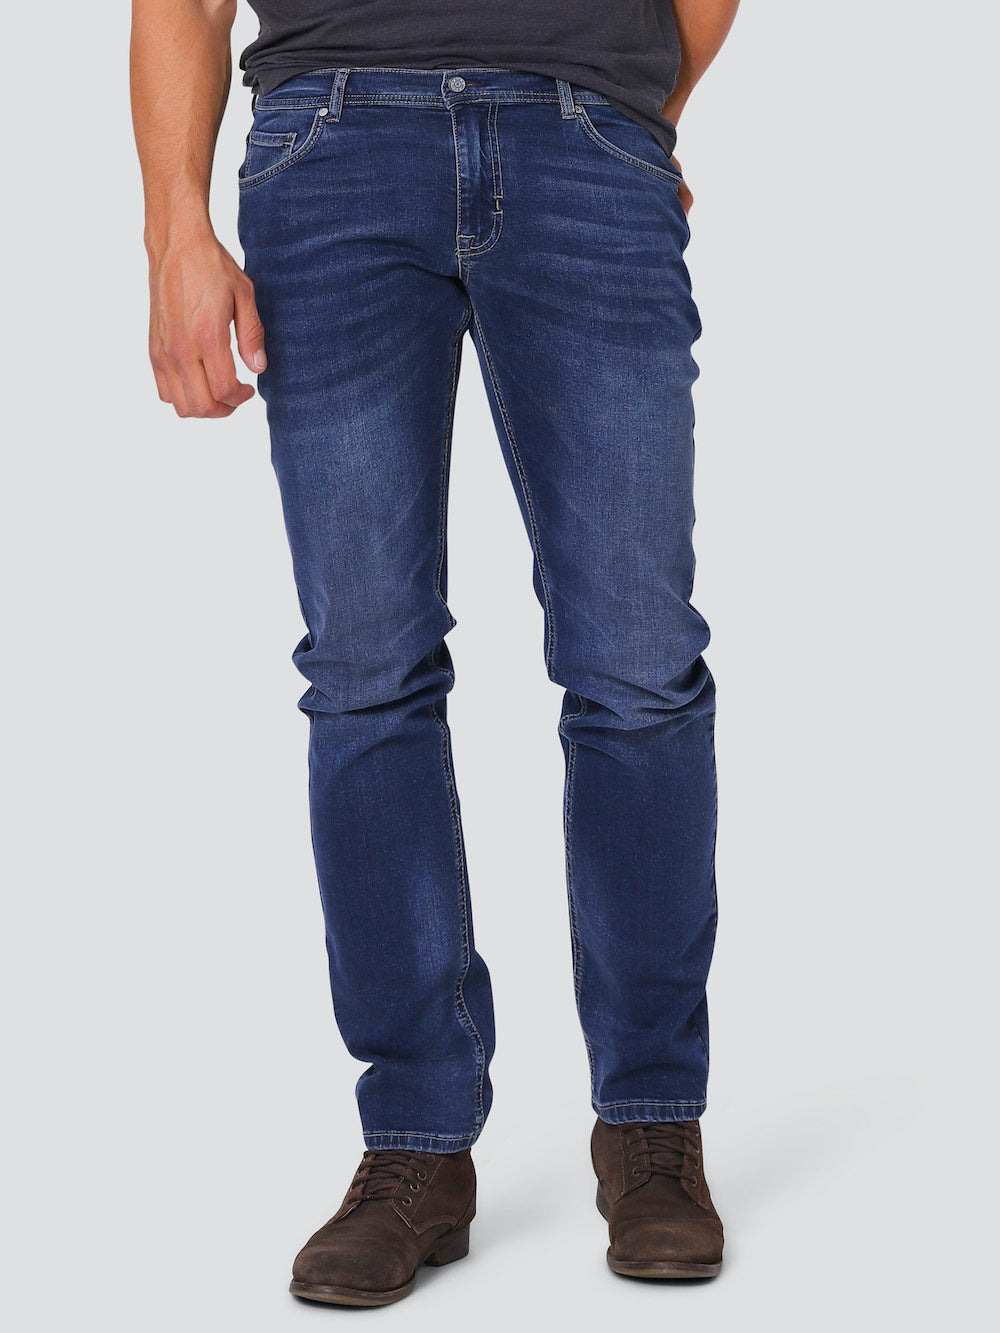 Felix Flex Jeans Regular 2160/2079 - Blue Denim